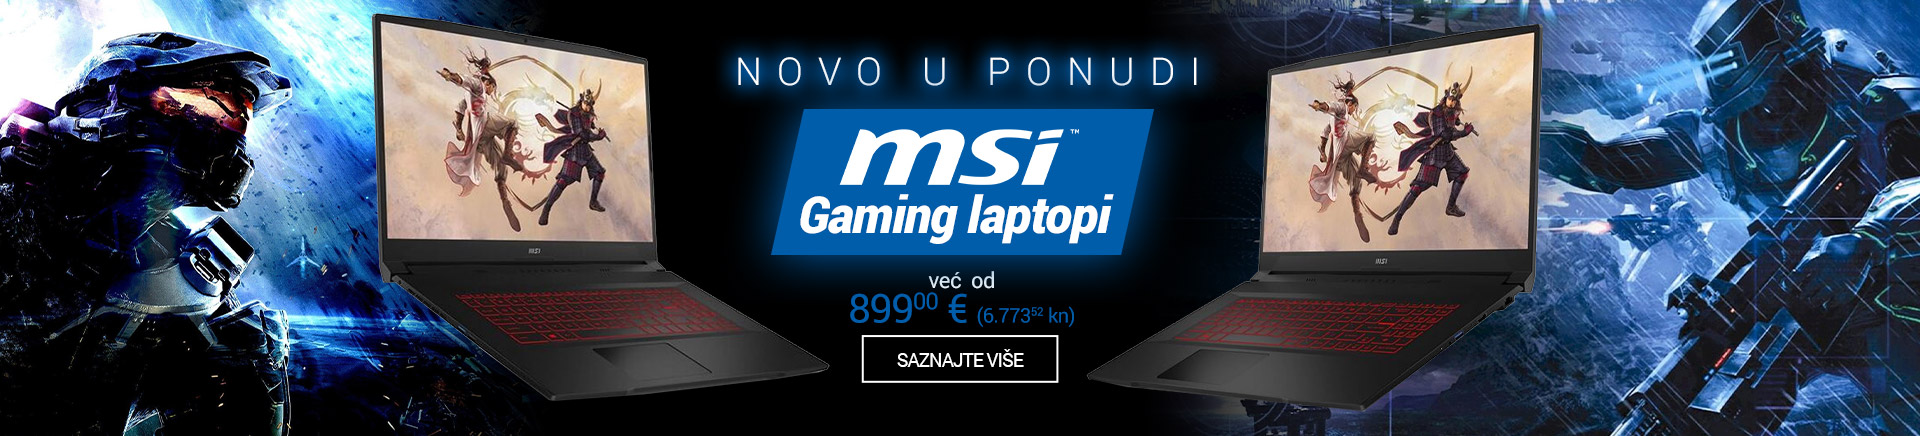 HR Novo u ponudi - MSI gaming laptopi MOBILE 380 X 436.jpg